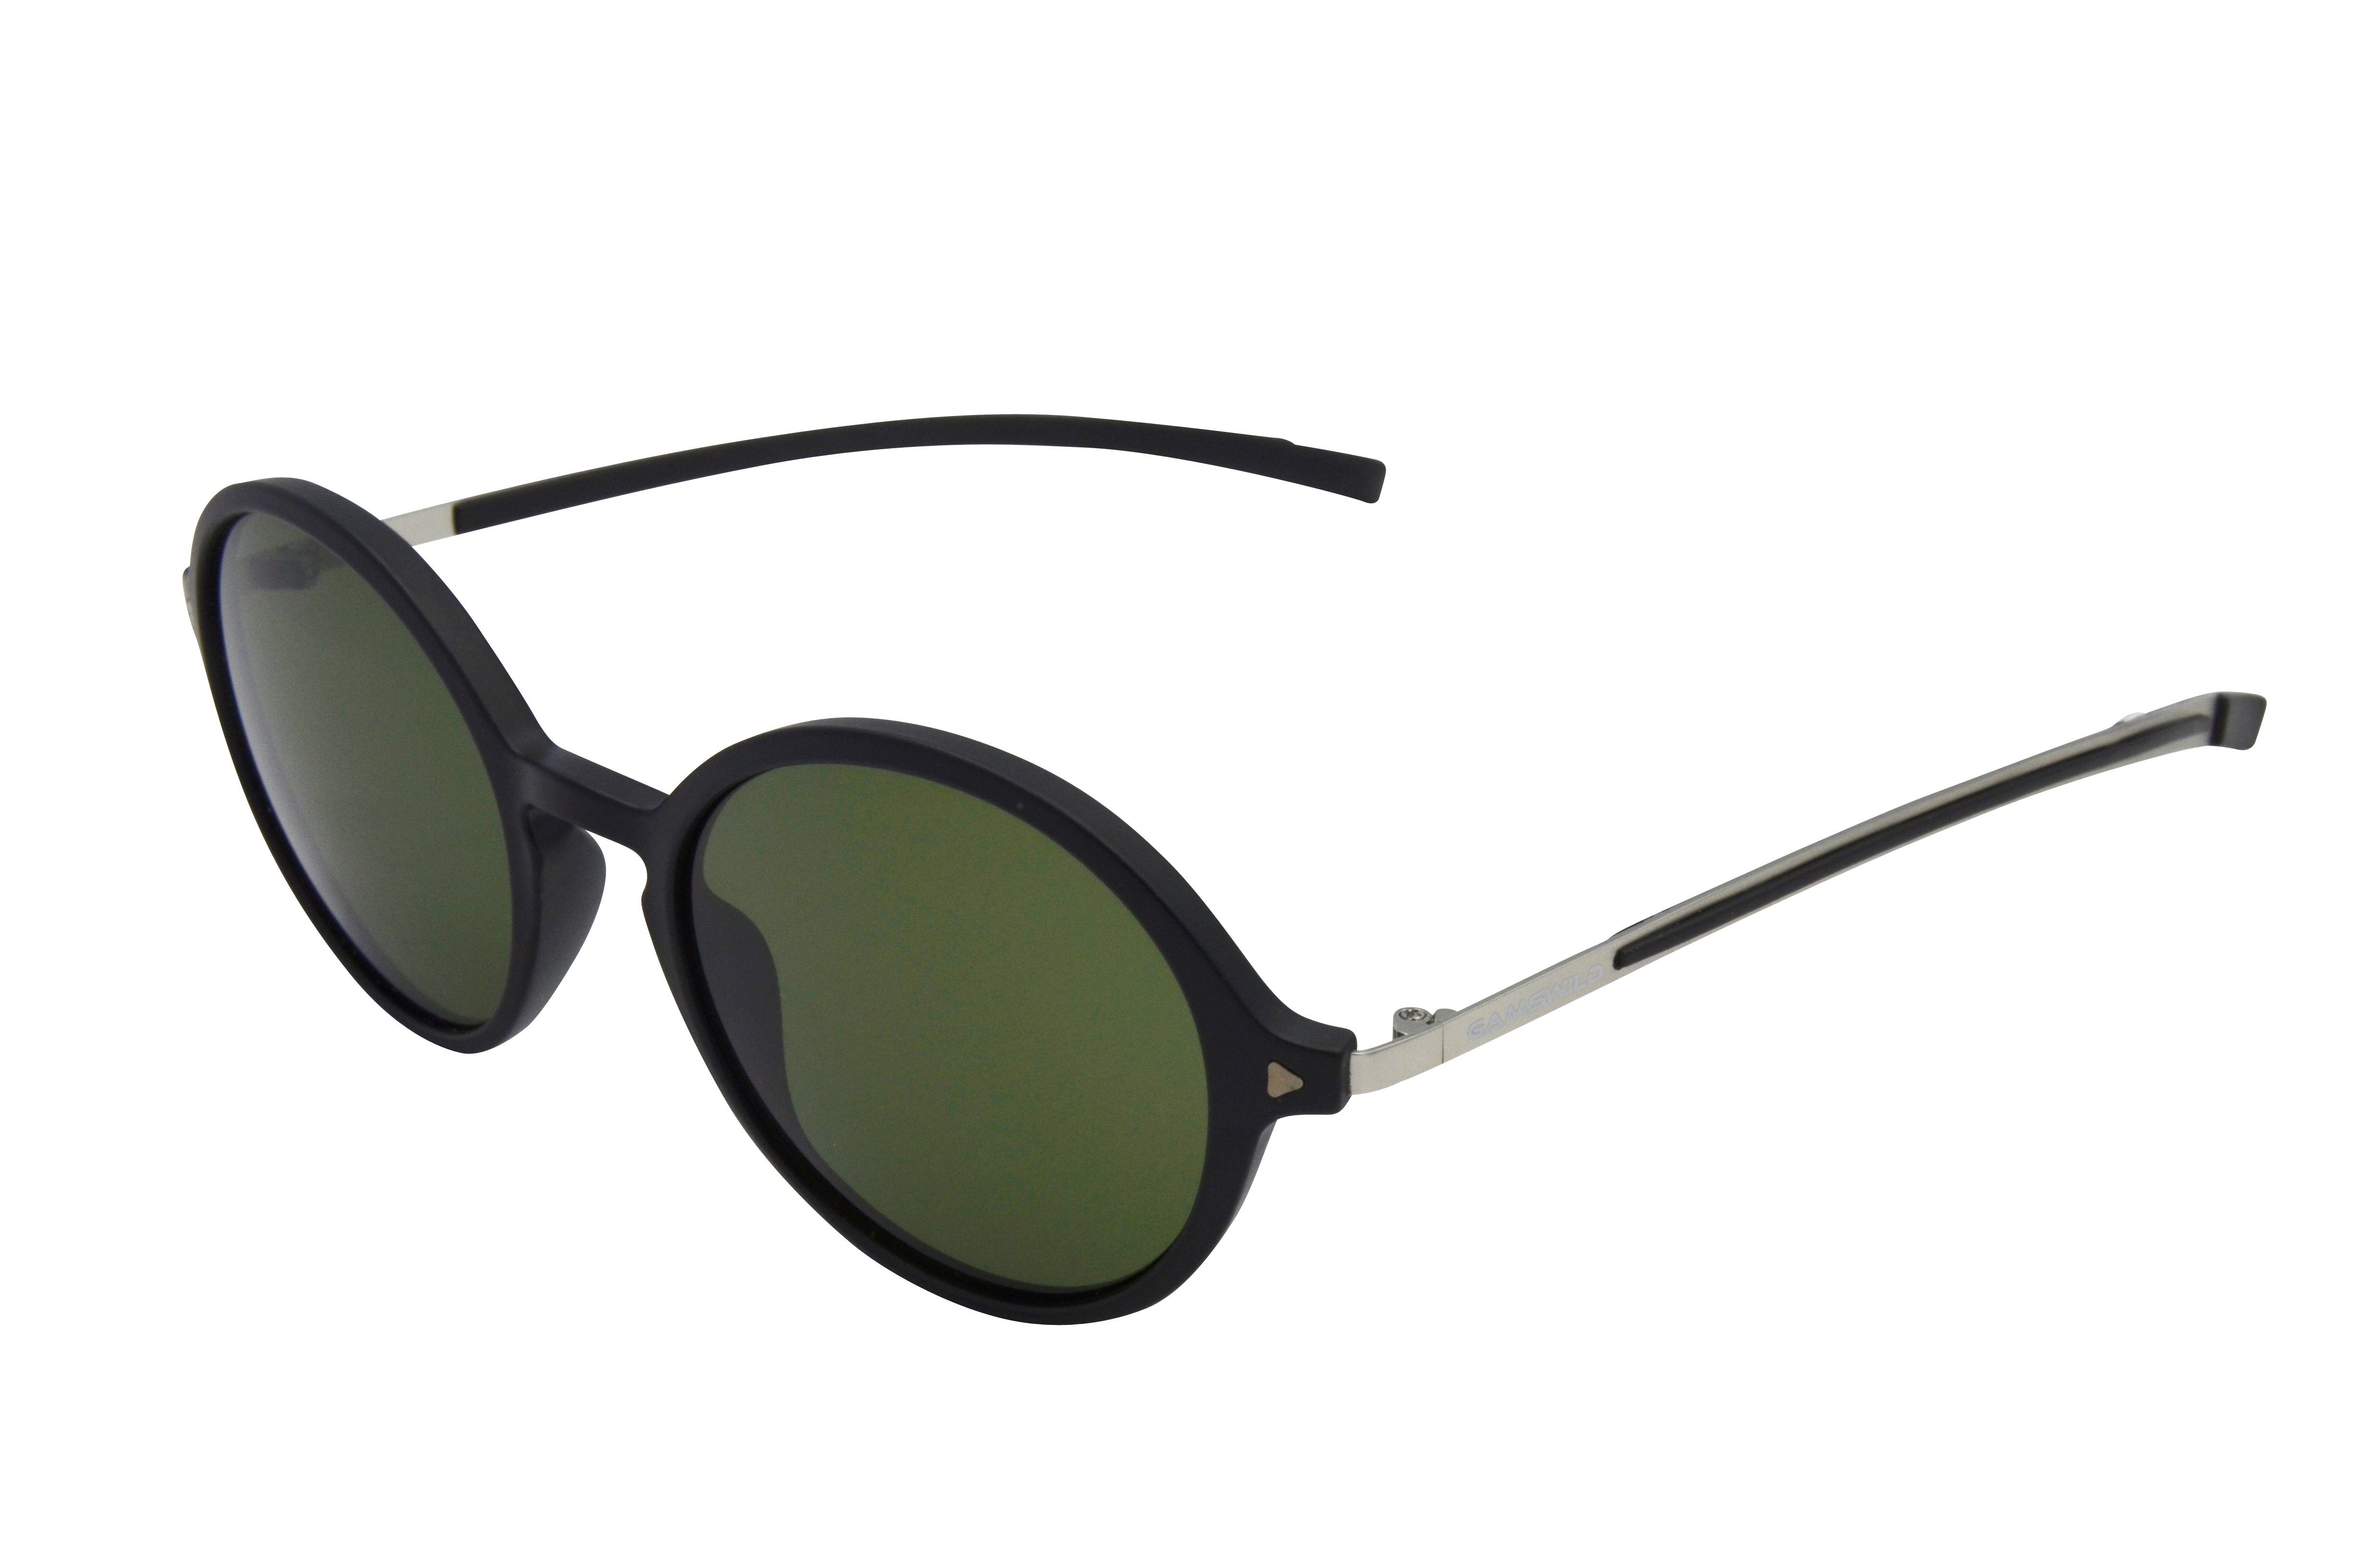 Gamswild Sonnenbrille UV400 GAMSSTYLE Modebrille Metallbügel Damen Modell WM3128 in blau, weiß, pink, schwarz